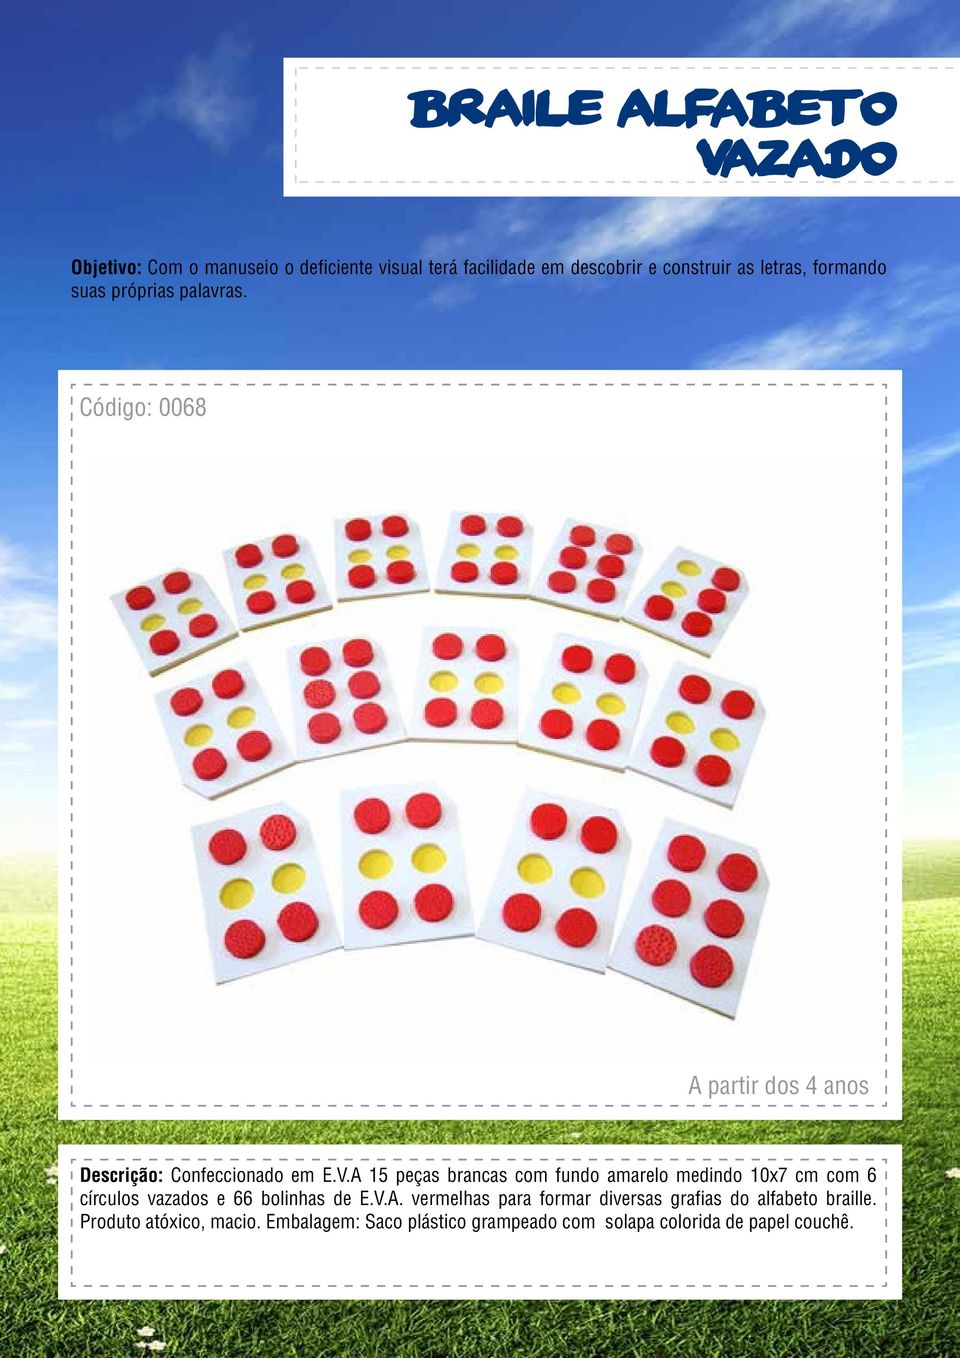 A 15 peças brancas com fundo amarelo medindo 10x7 cm com 6 círculos vazados e 66 bolinhas de E.V.A. vermelhas para formar diversas grafias do alfabeto braille.